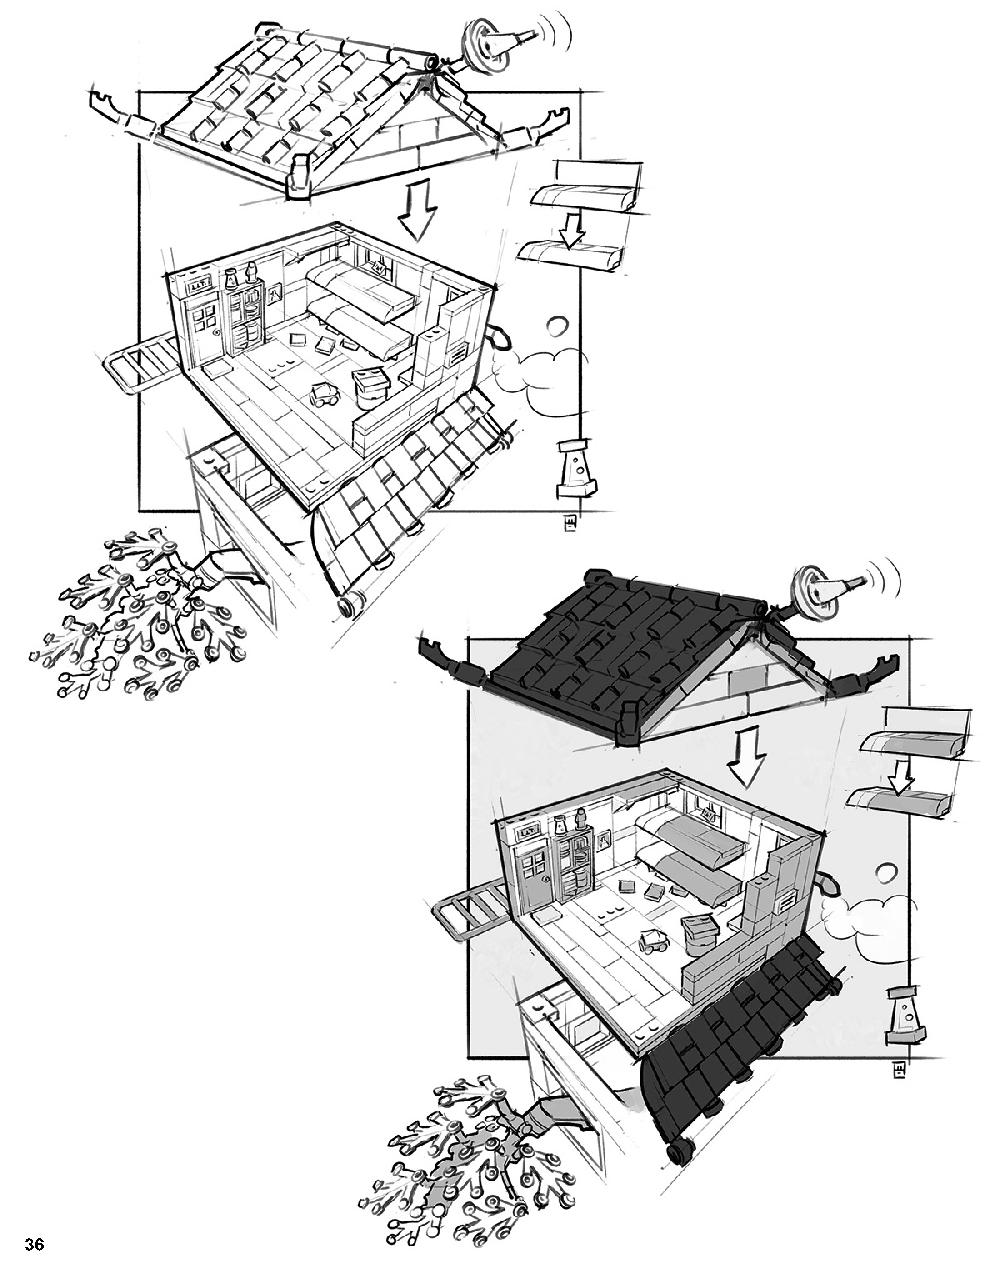 ニンジャゴー シティ 70620 レゴの商品情報 レゴの説明書・組立方法 36 page